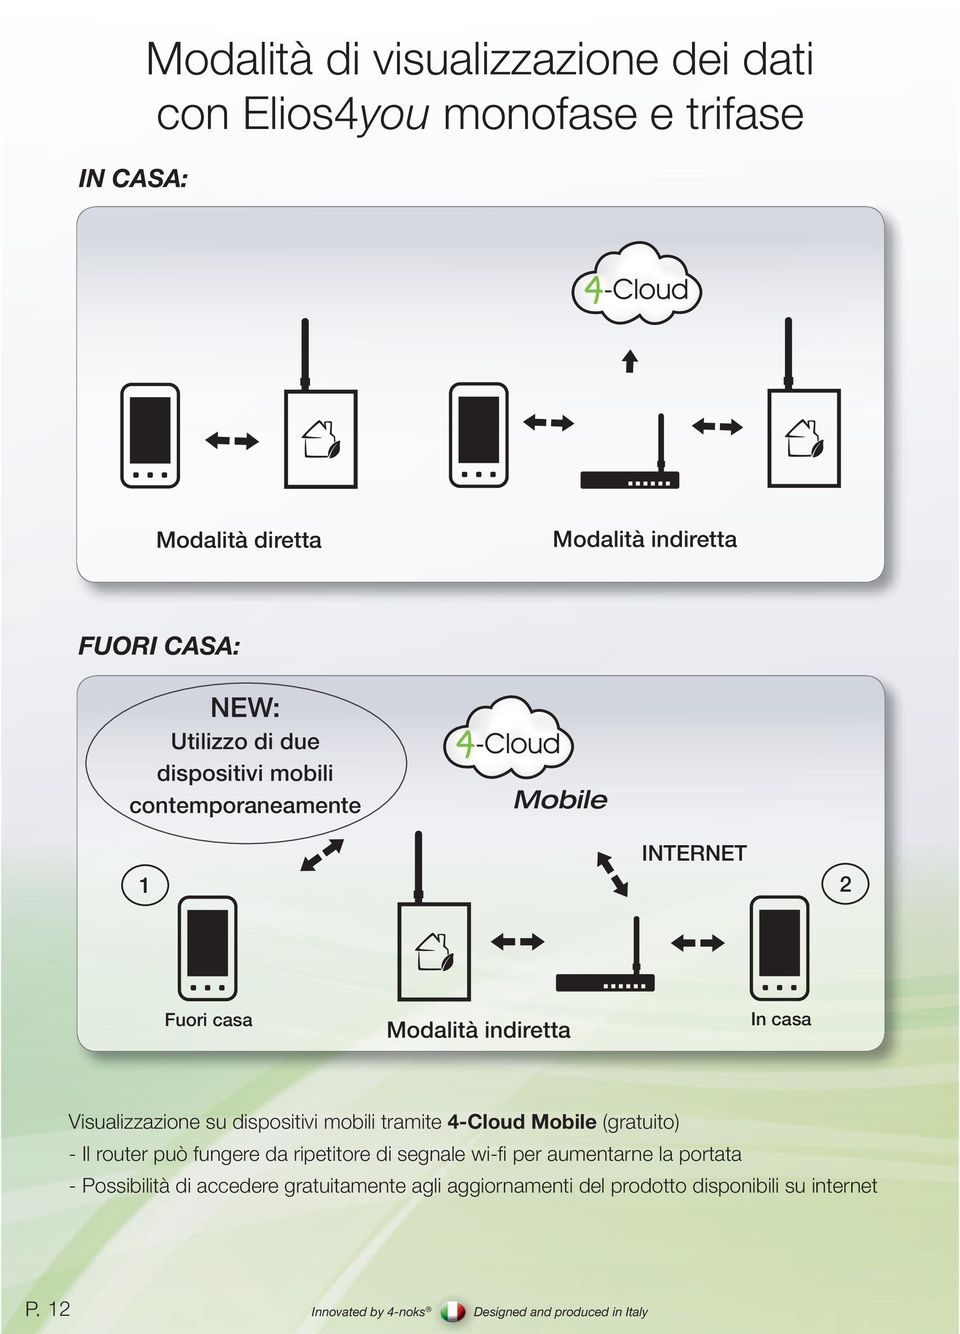 Visualizzazione su dispositivi mobili tramite 4-Cloud Mobile (gratuito) - Il router può fungere da ripetitore di segnale wi-fi